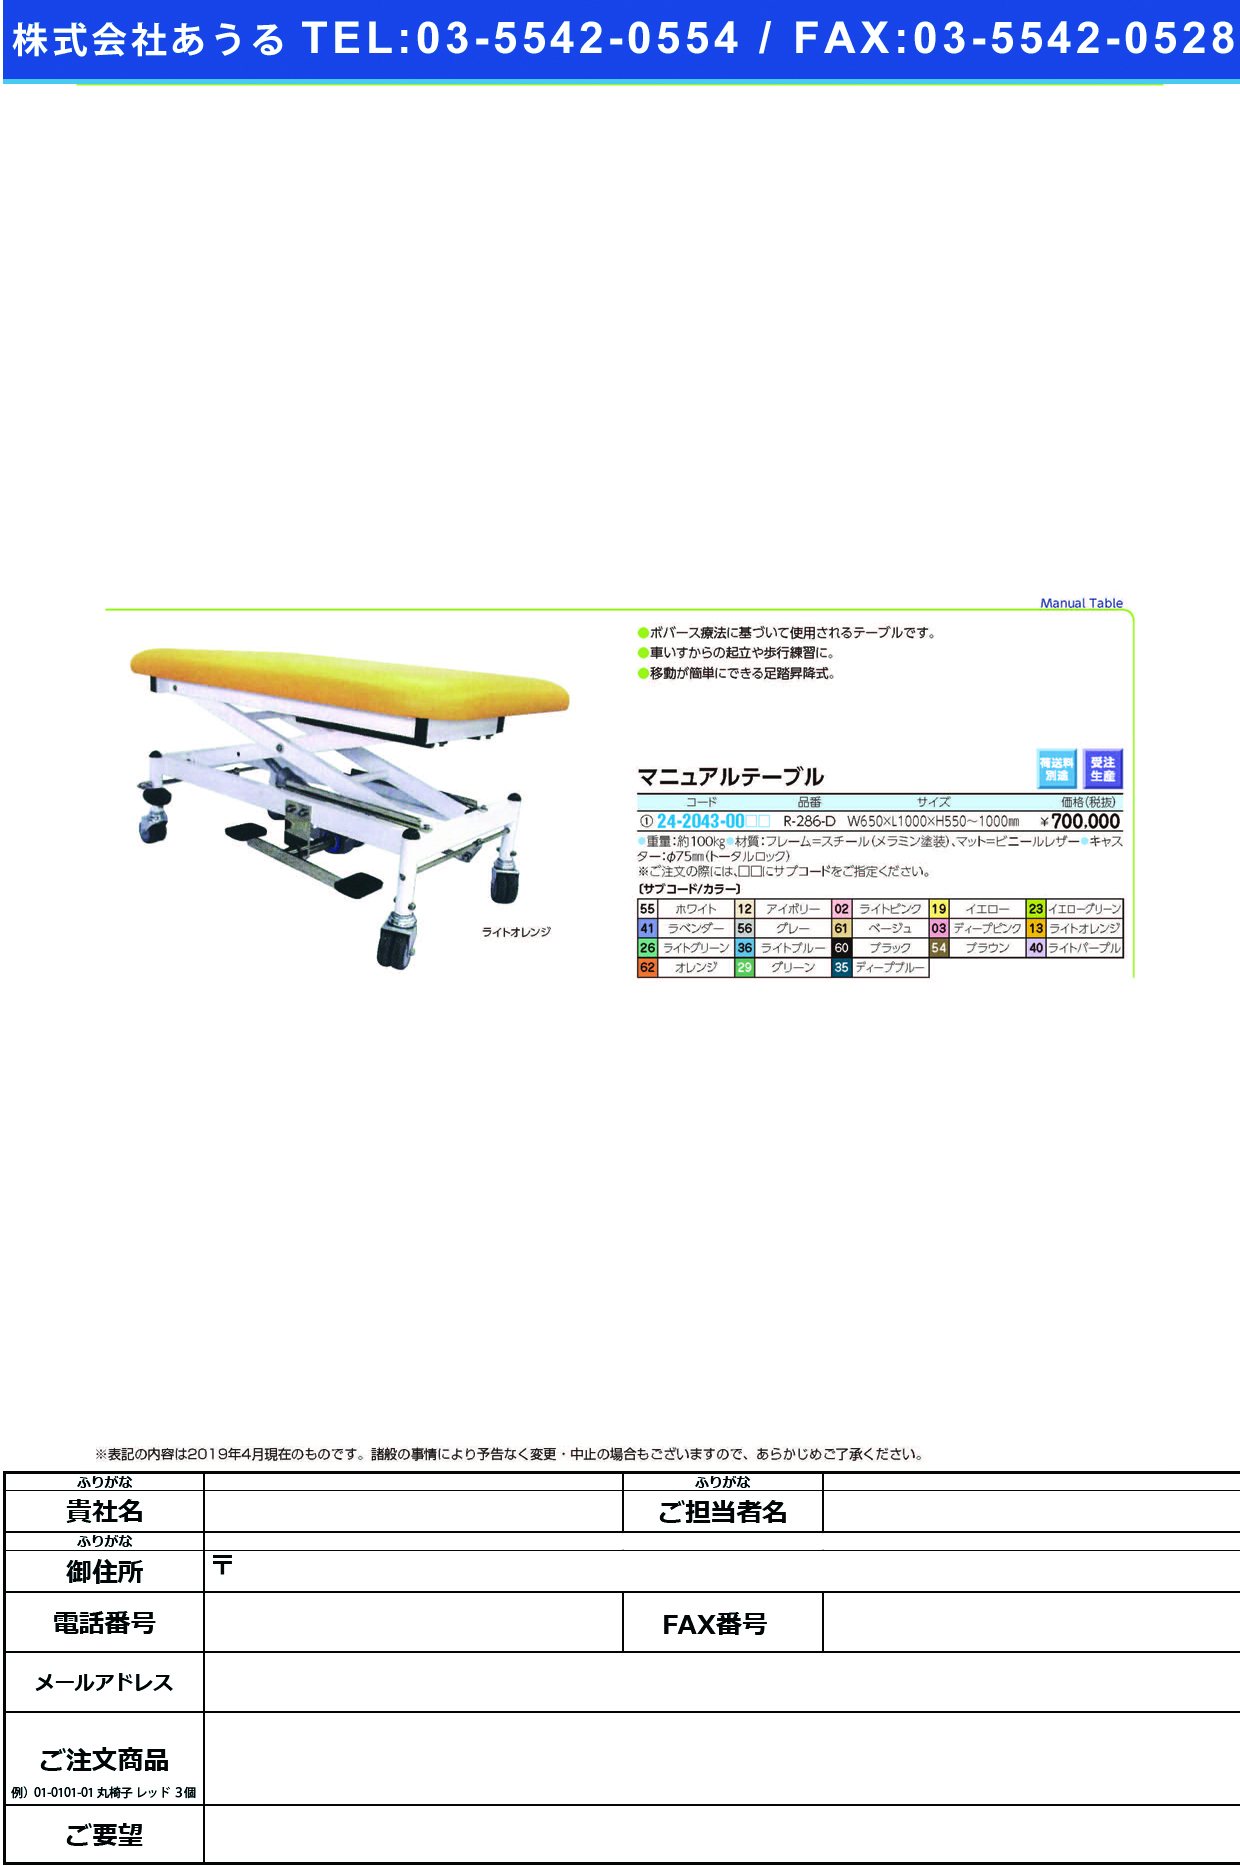 (24-2043-00)マニュアルテーブル R-286-D ﾏﾆｭｱﾙﾃｰﾌﾞﾙ ディープピンク【1台単位】【2019年カタログ商品】